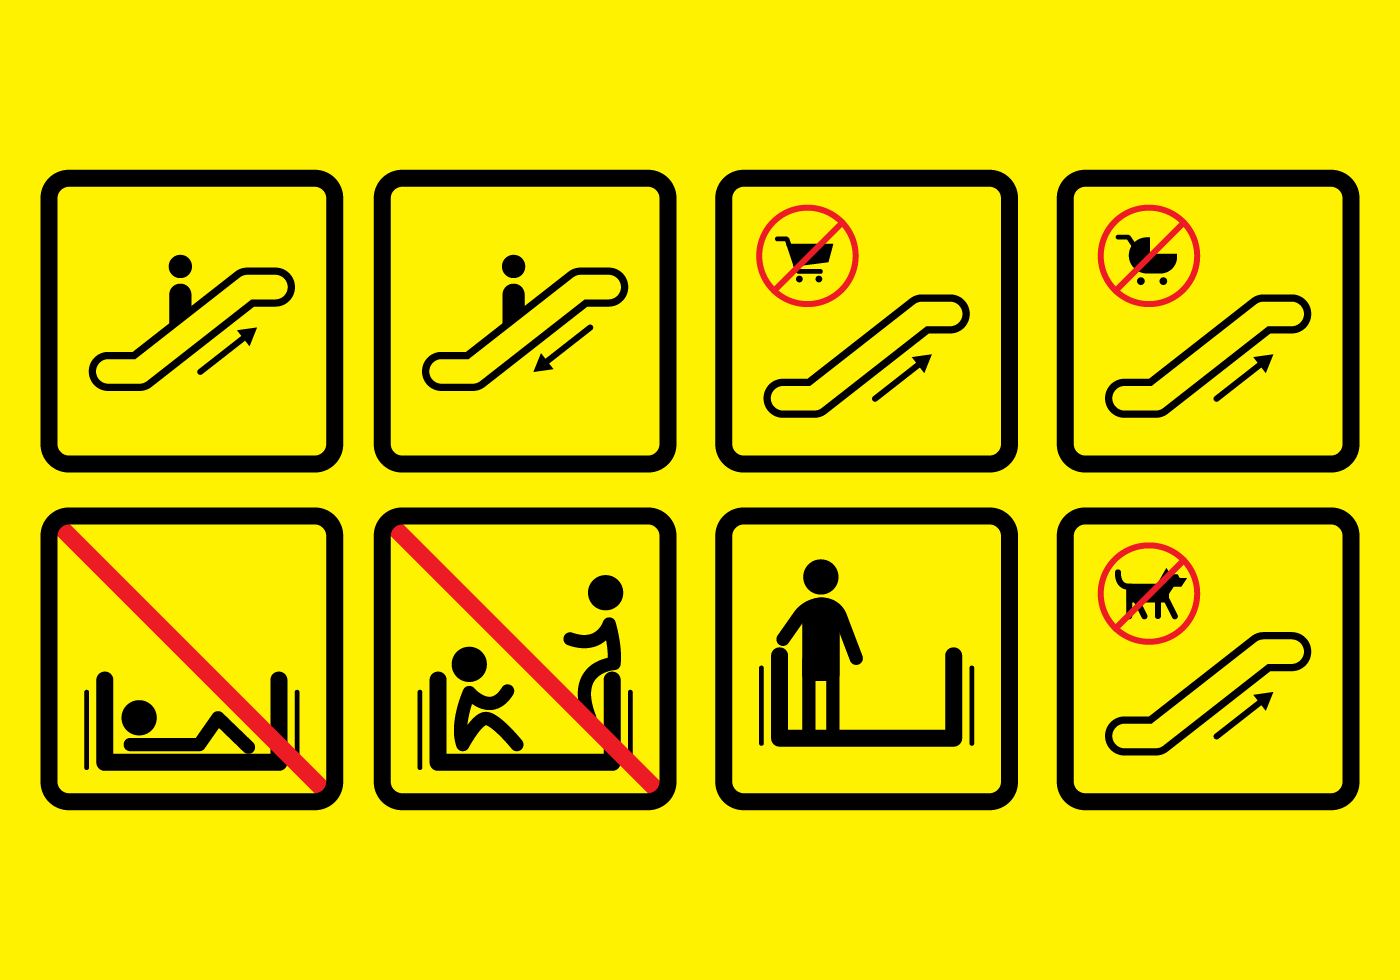 Правила безопасности на эскалаторе. Таблички на эскалатор. Предупреждающие знаки на эскалаторе. Знаки безопасности на эскалаторе. Предупреждающие знаки в метро.